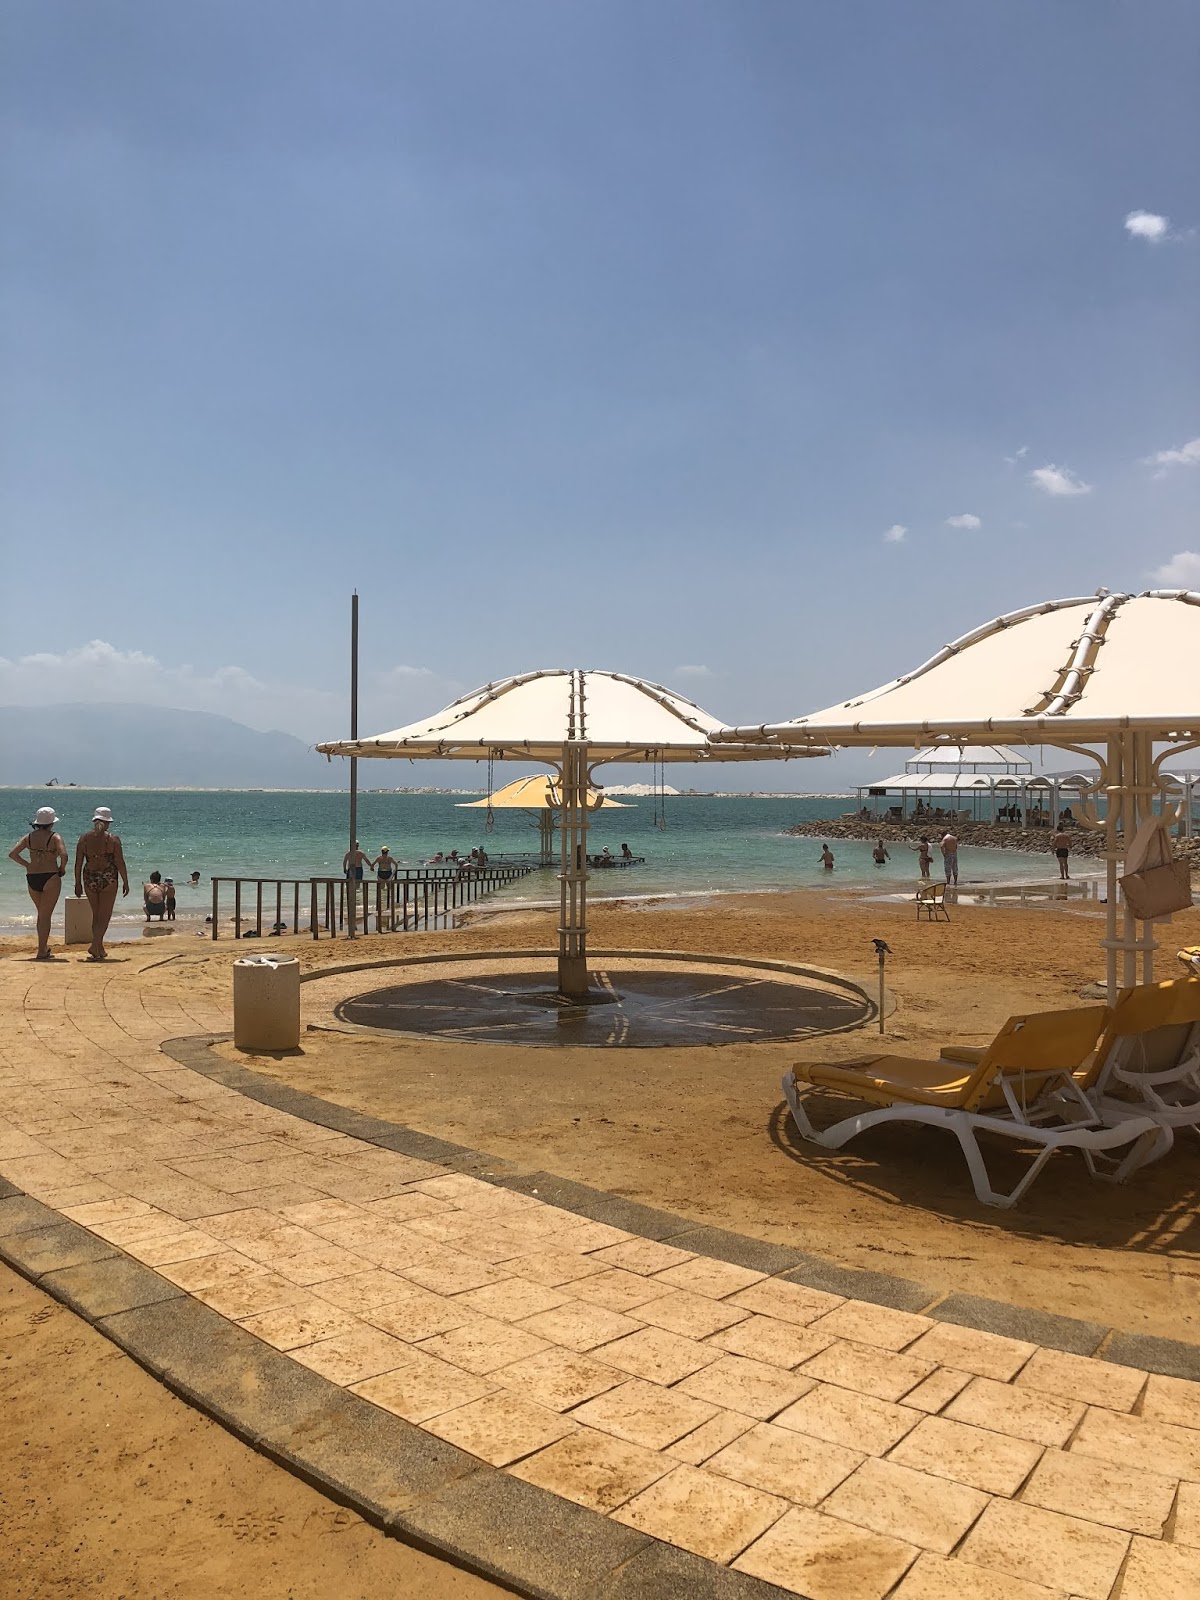 Jerusalem-Dead Sea 🇮🇱